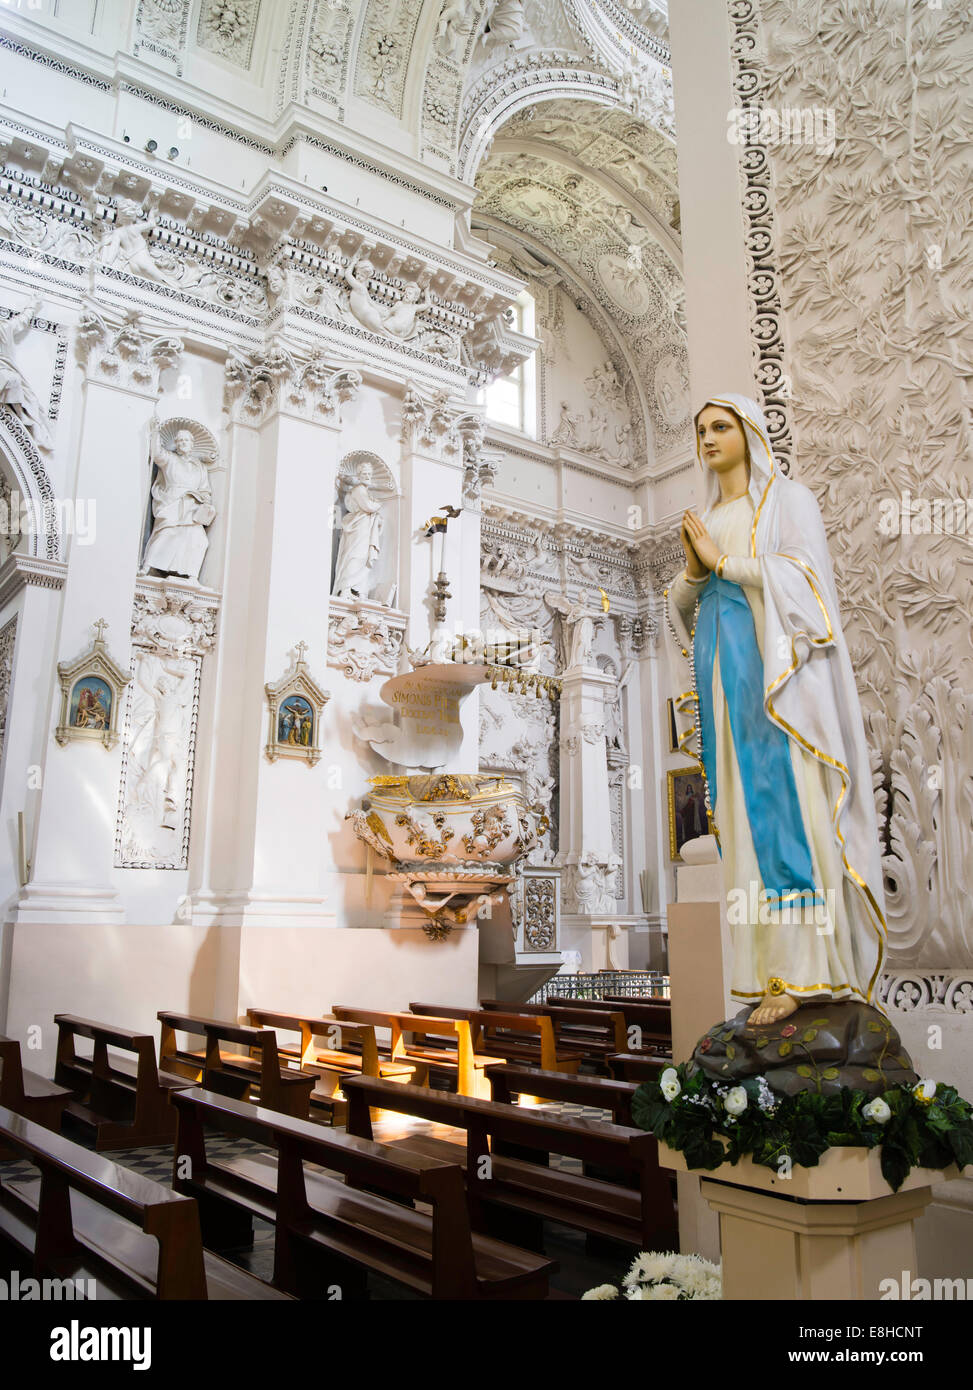 Vista interior de la Basílica de San Pedro y san Pablo ChurchŠv. apaštalų Petro ir Povilo bažnyčia, en Vilnius, Lituania Foto de stock